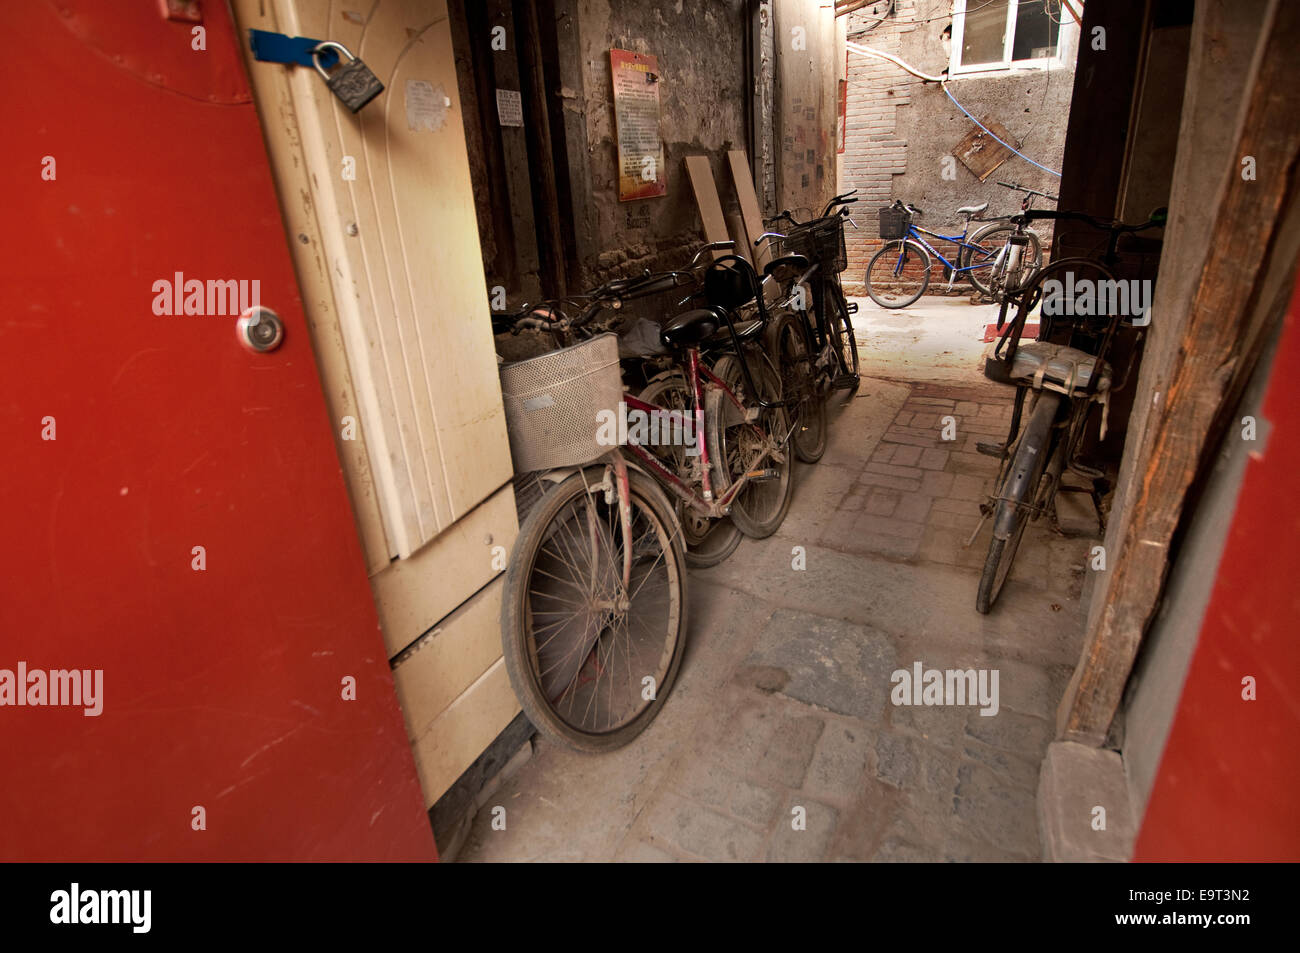 Les vélos garés dans une ruelle étroite, hutong, Beijing, Chine Banque D'Images